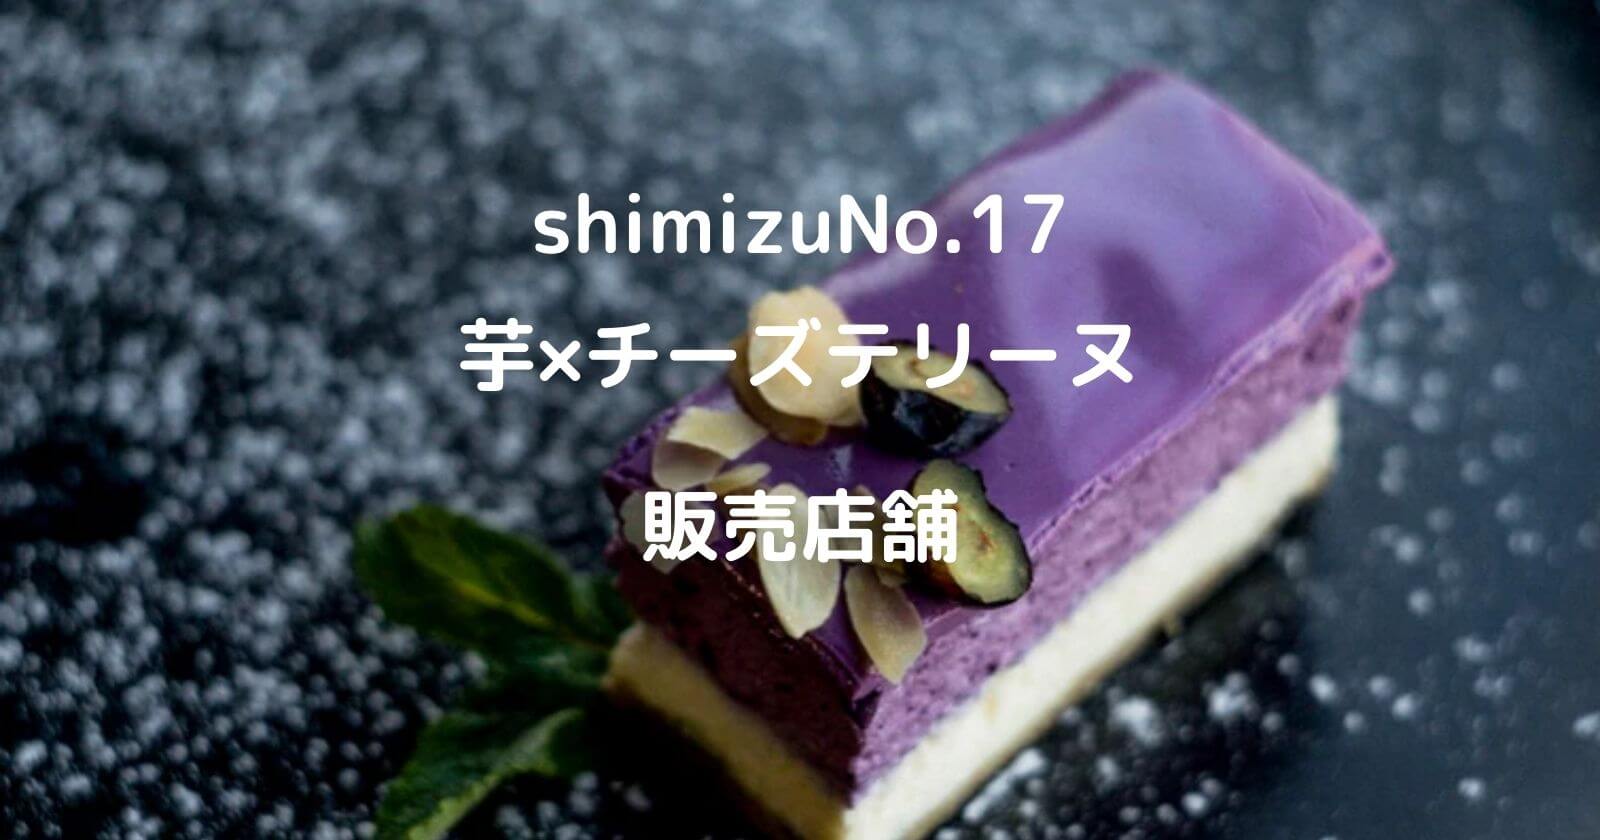 shimizuNo.17の販売店